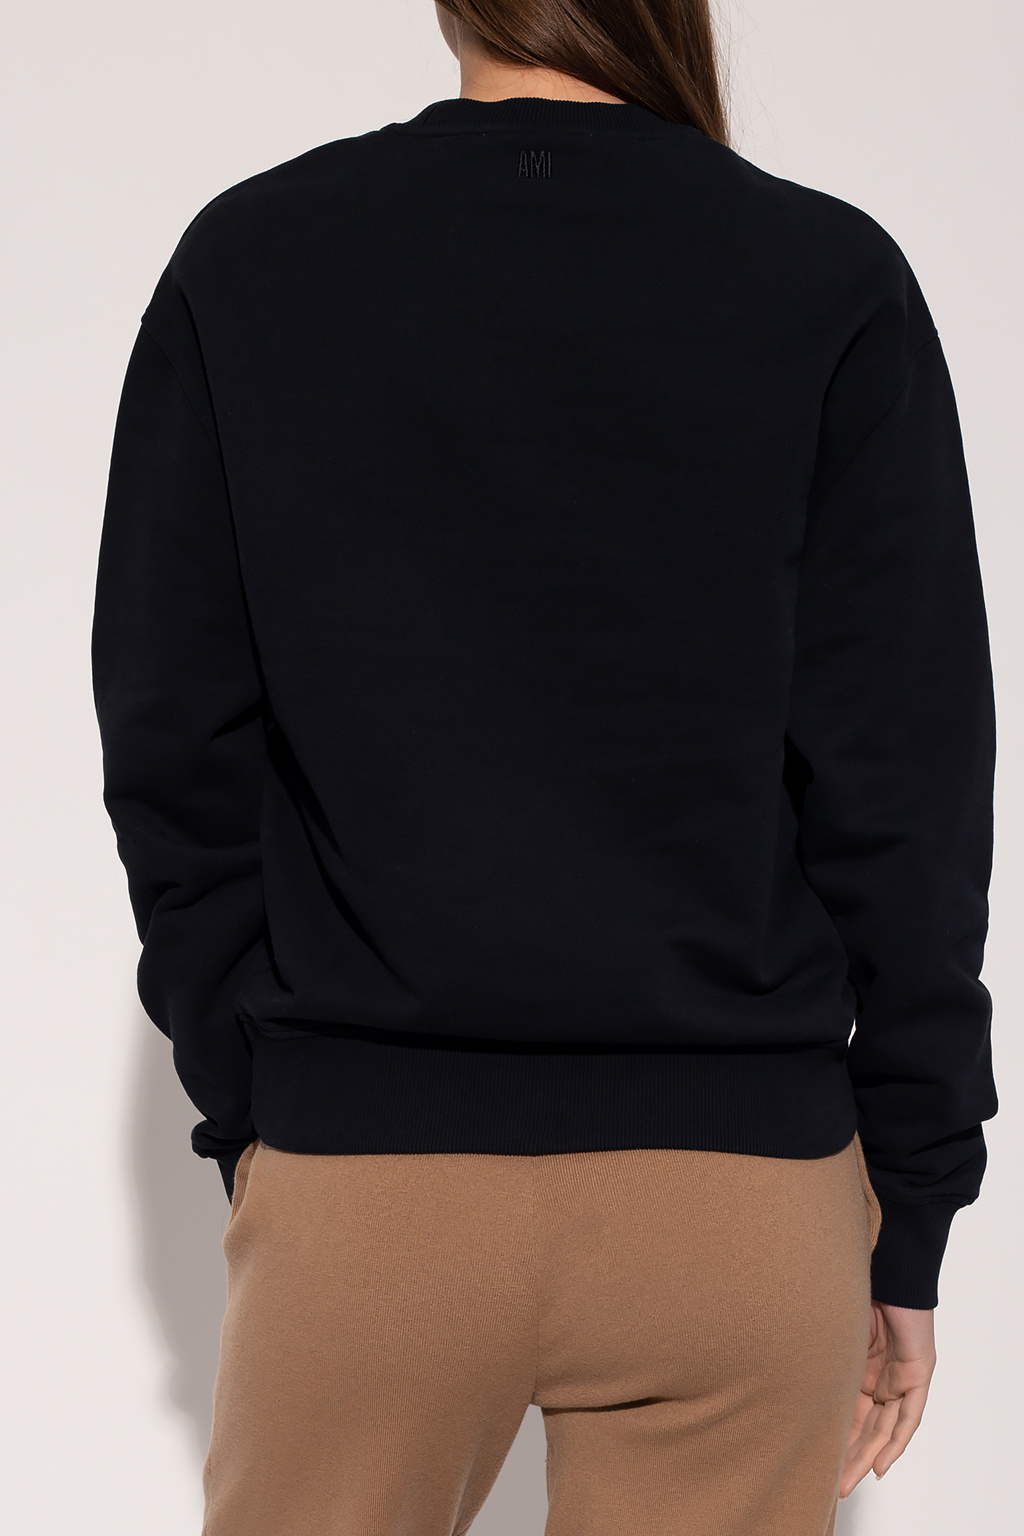 Ami Alexandre Mattiussi Gucci embroidered-collar polo shirt